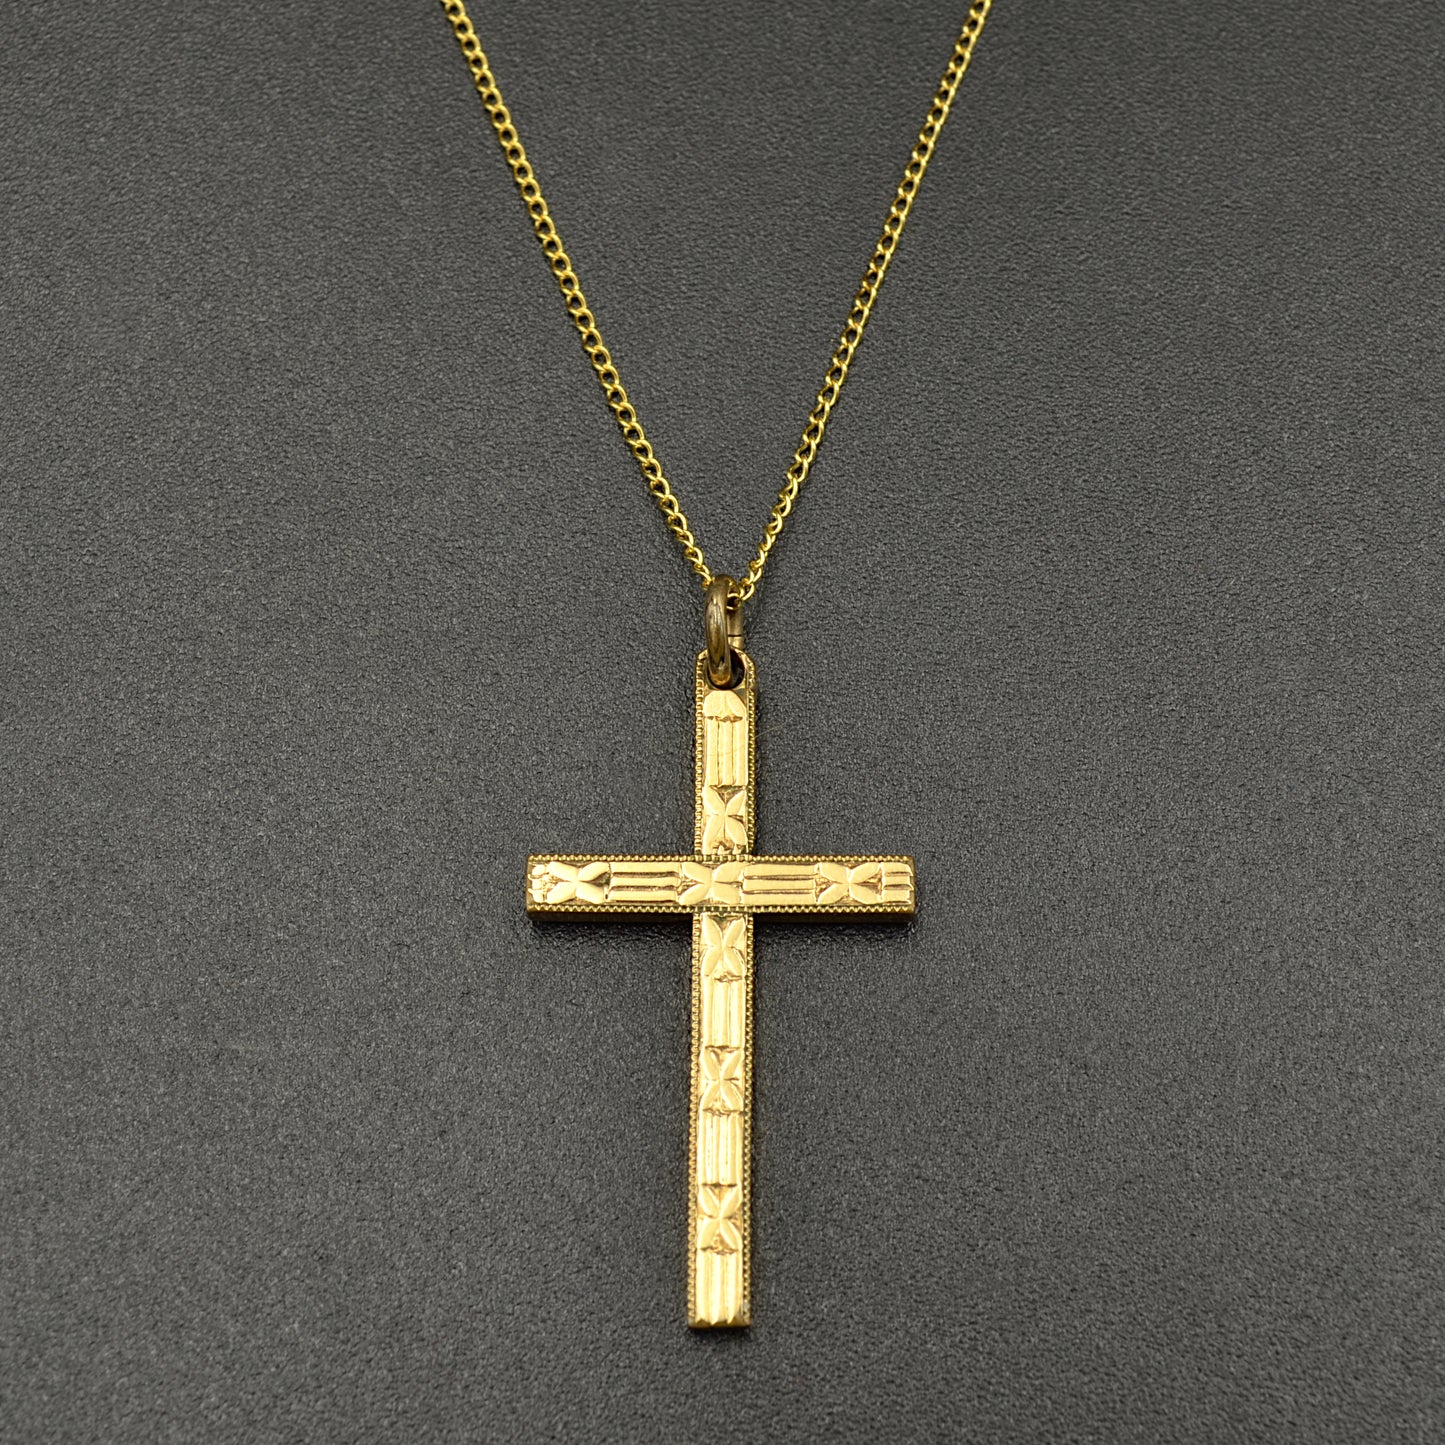 Midcentury Cross Pendant Necklace